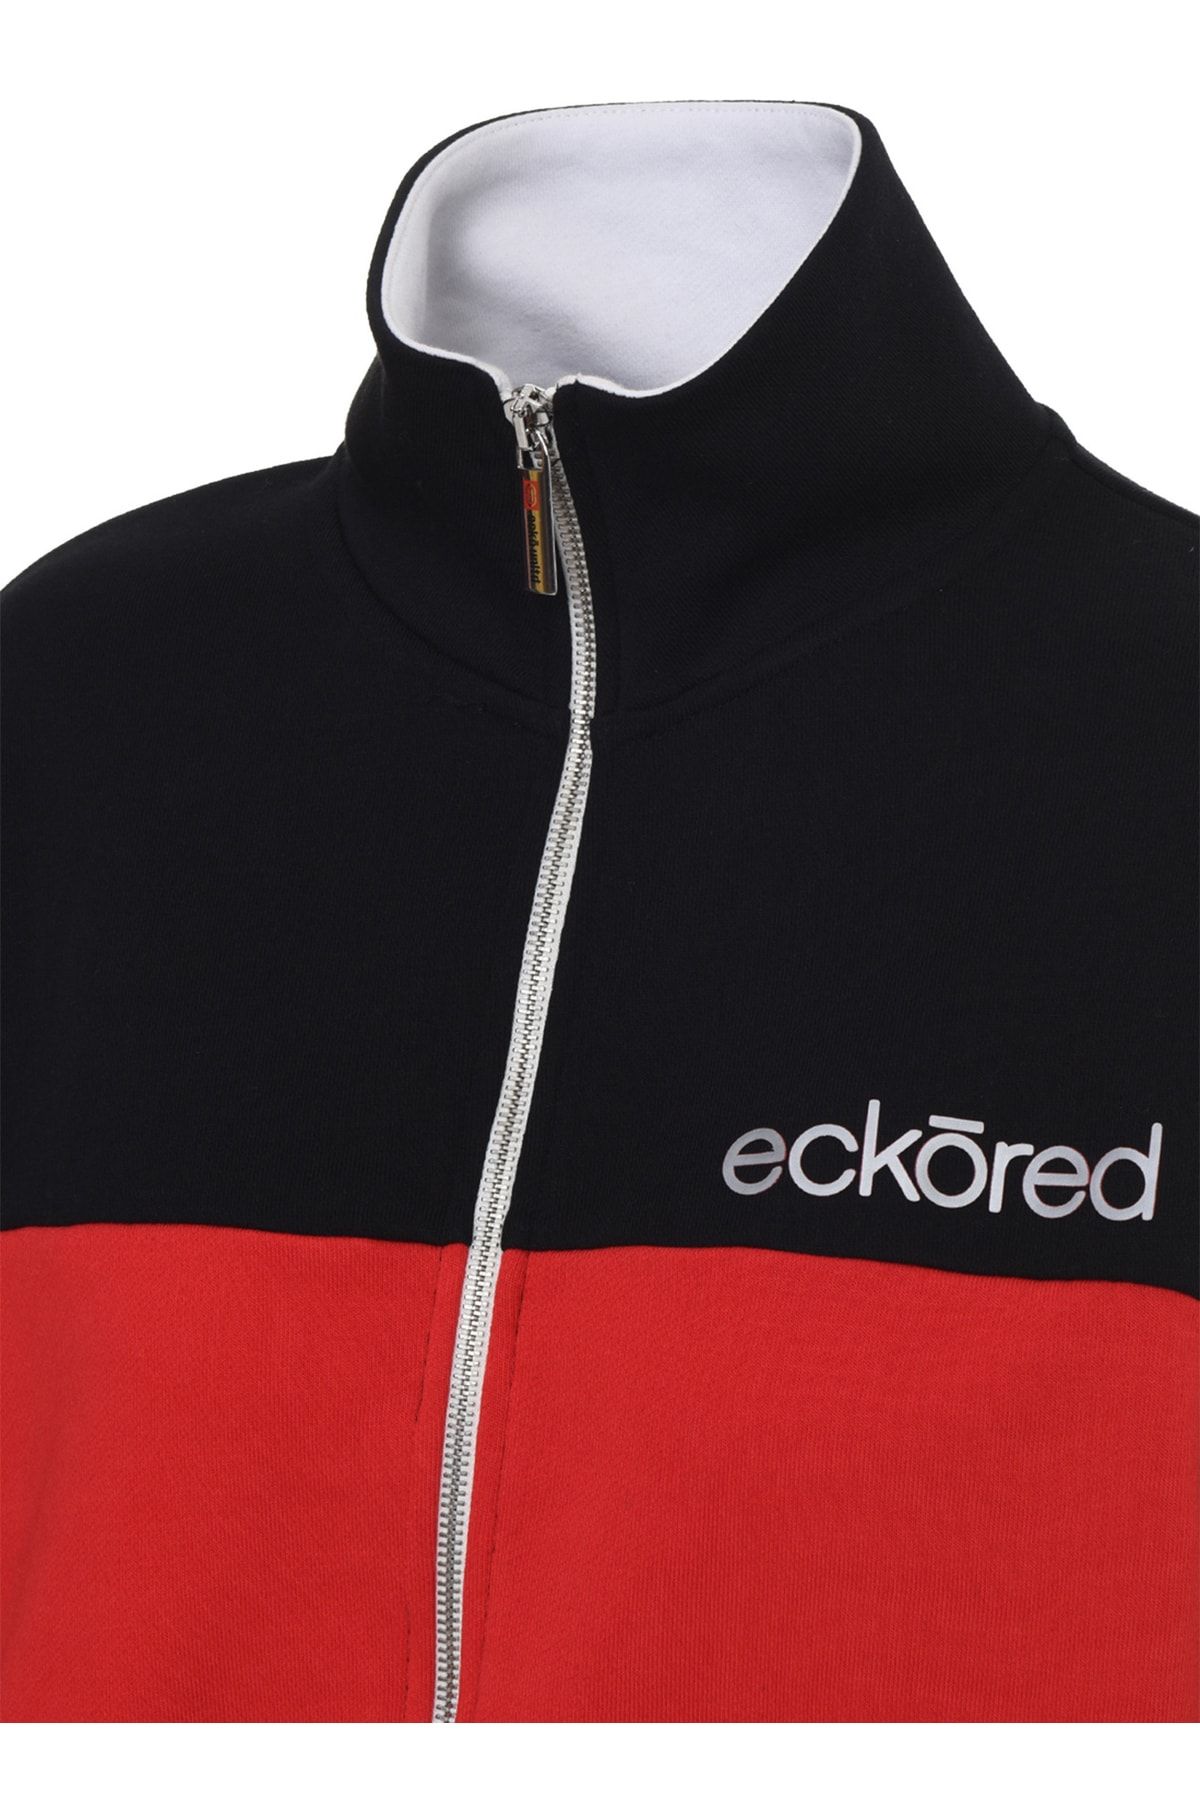 Ecko Unltd Ecko Unlimited Dik Yaka Oversized Siyah Kadın Sweatshirt